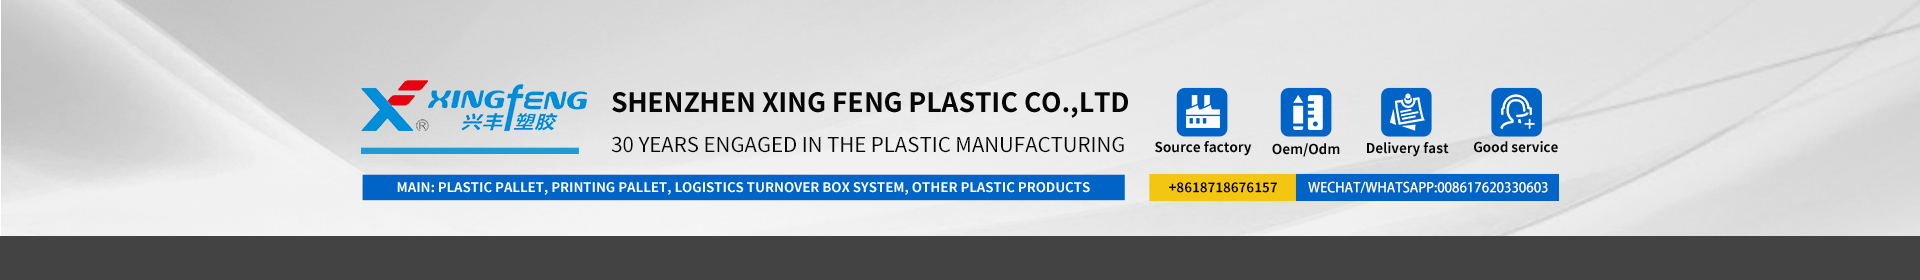 L'empresa de plàstic xingfeng és professional en productes de plàstic des de fa 30 anys